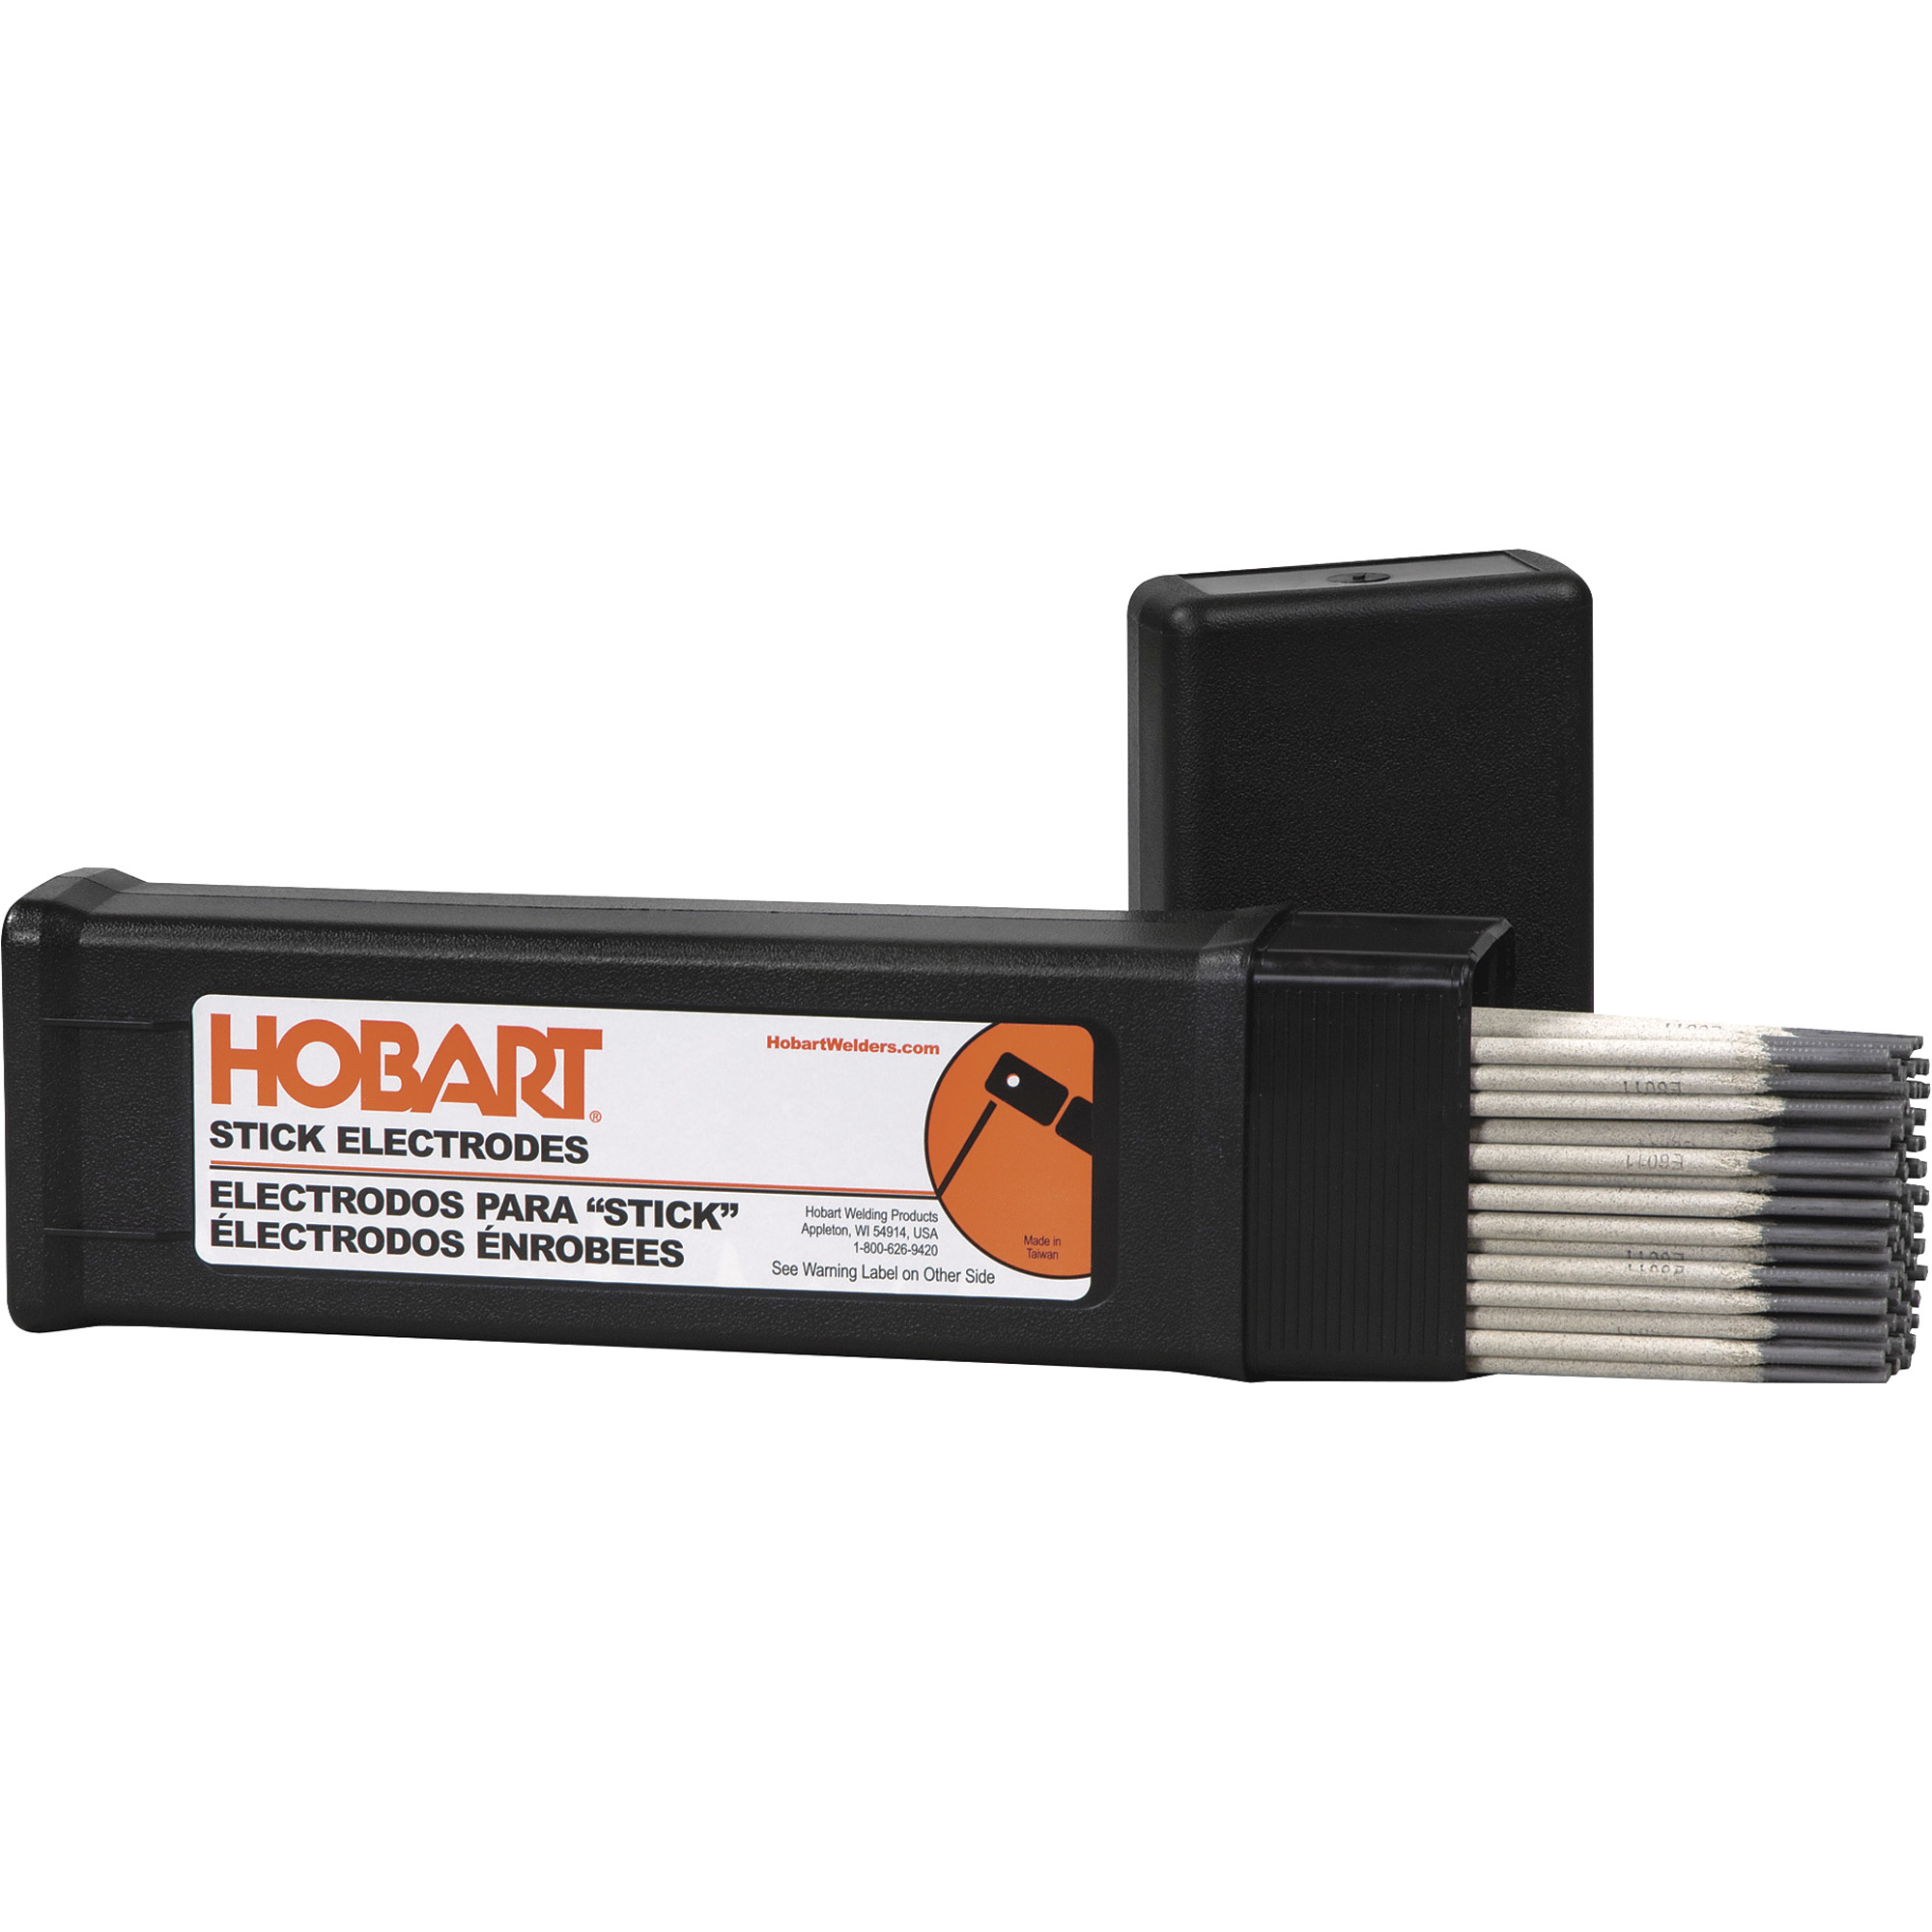 Hobart Filler Metals Stick Welding Electrodes â 7018, 3/32Inch x 14Inch L, 5-Lb. Container, Model 770482